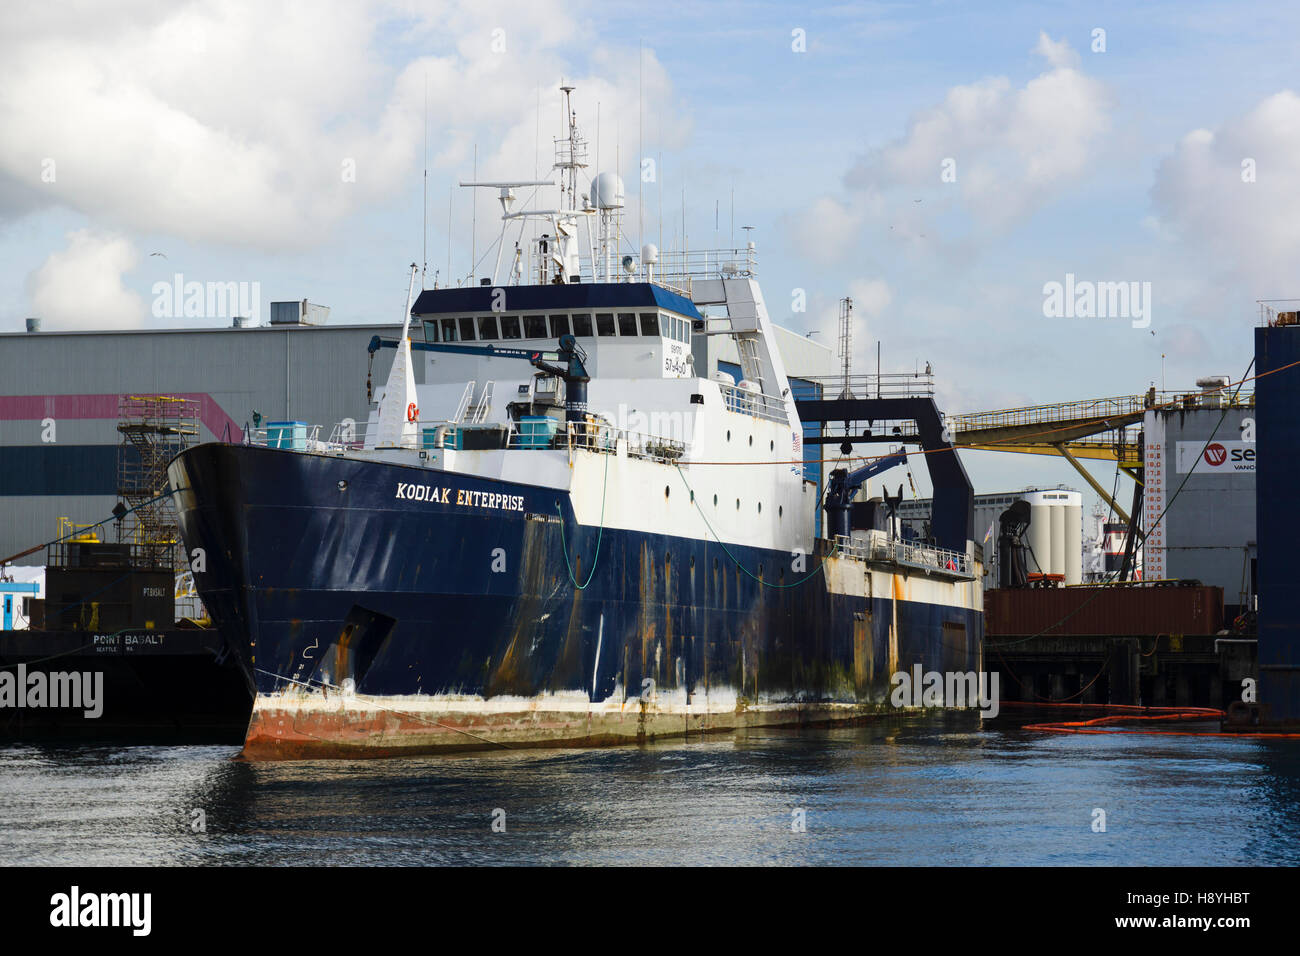 La pesca a strascico 'Kodiak Enterprise' a Seaspan cantieri navali in North Vancouver, BC, Canada. Foto Stock